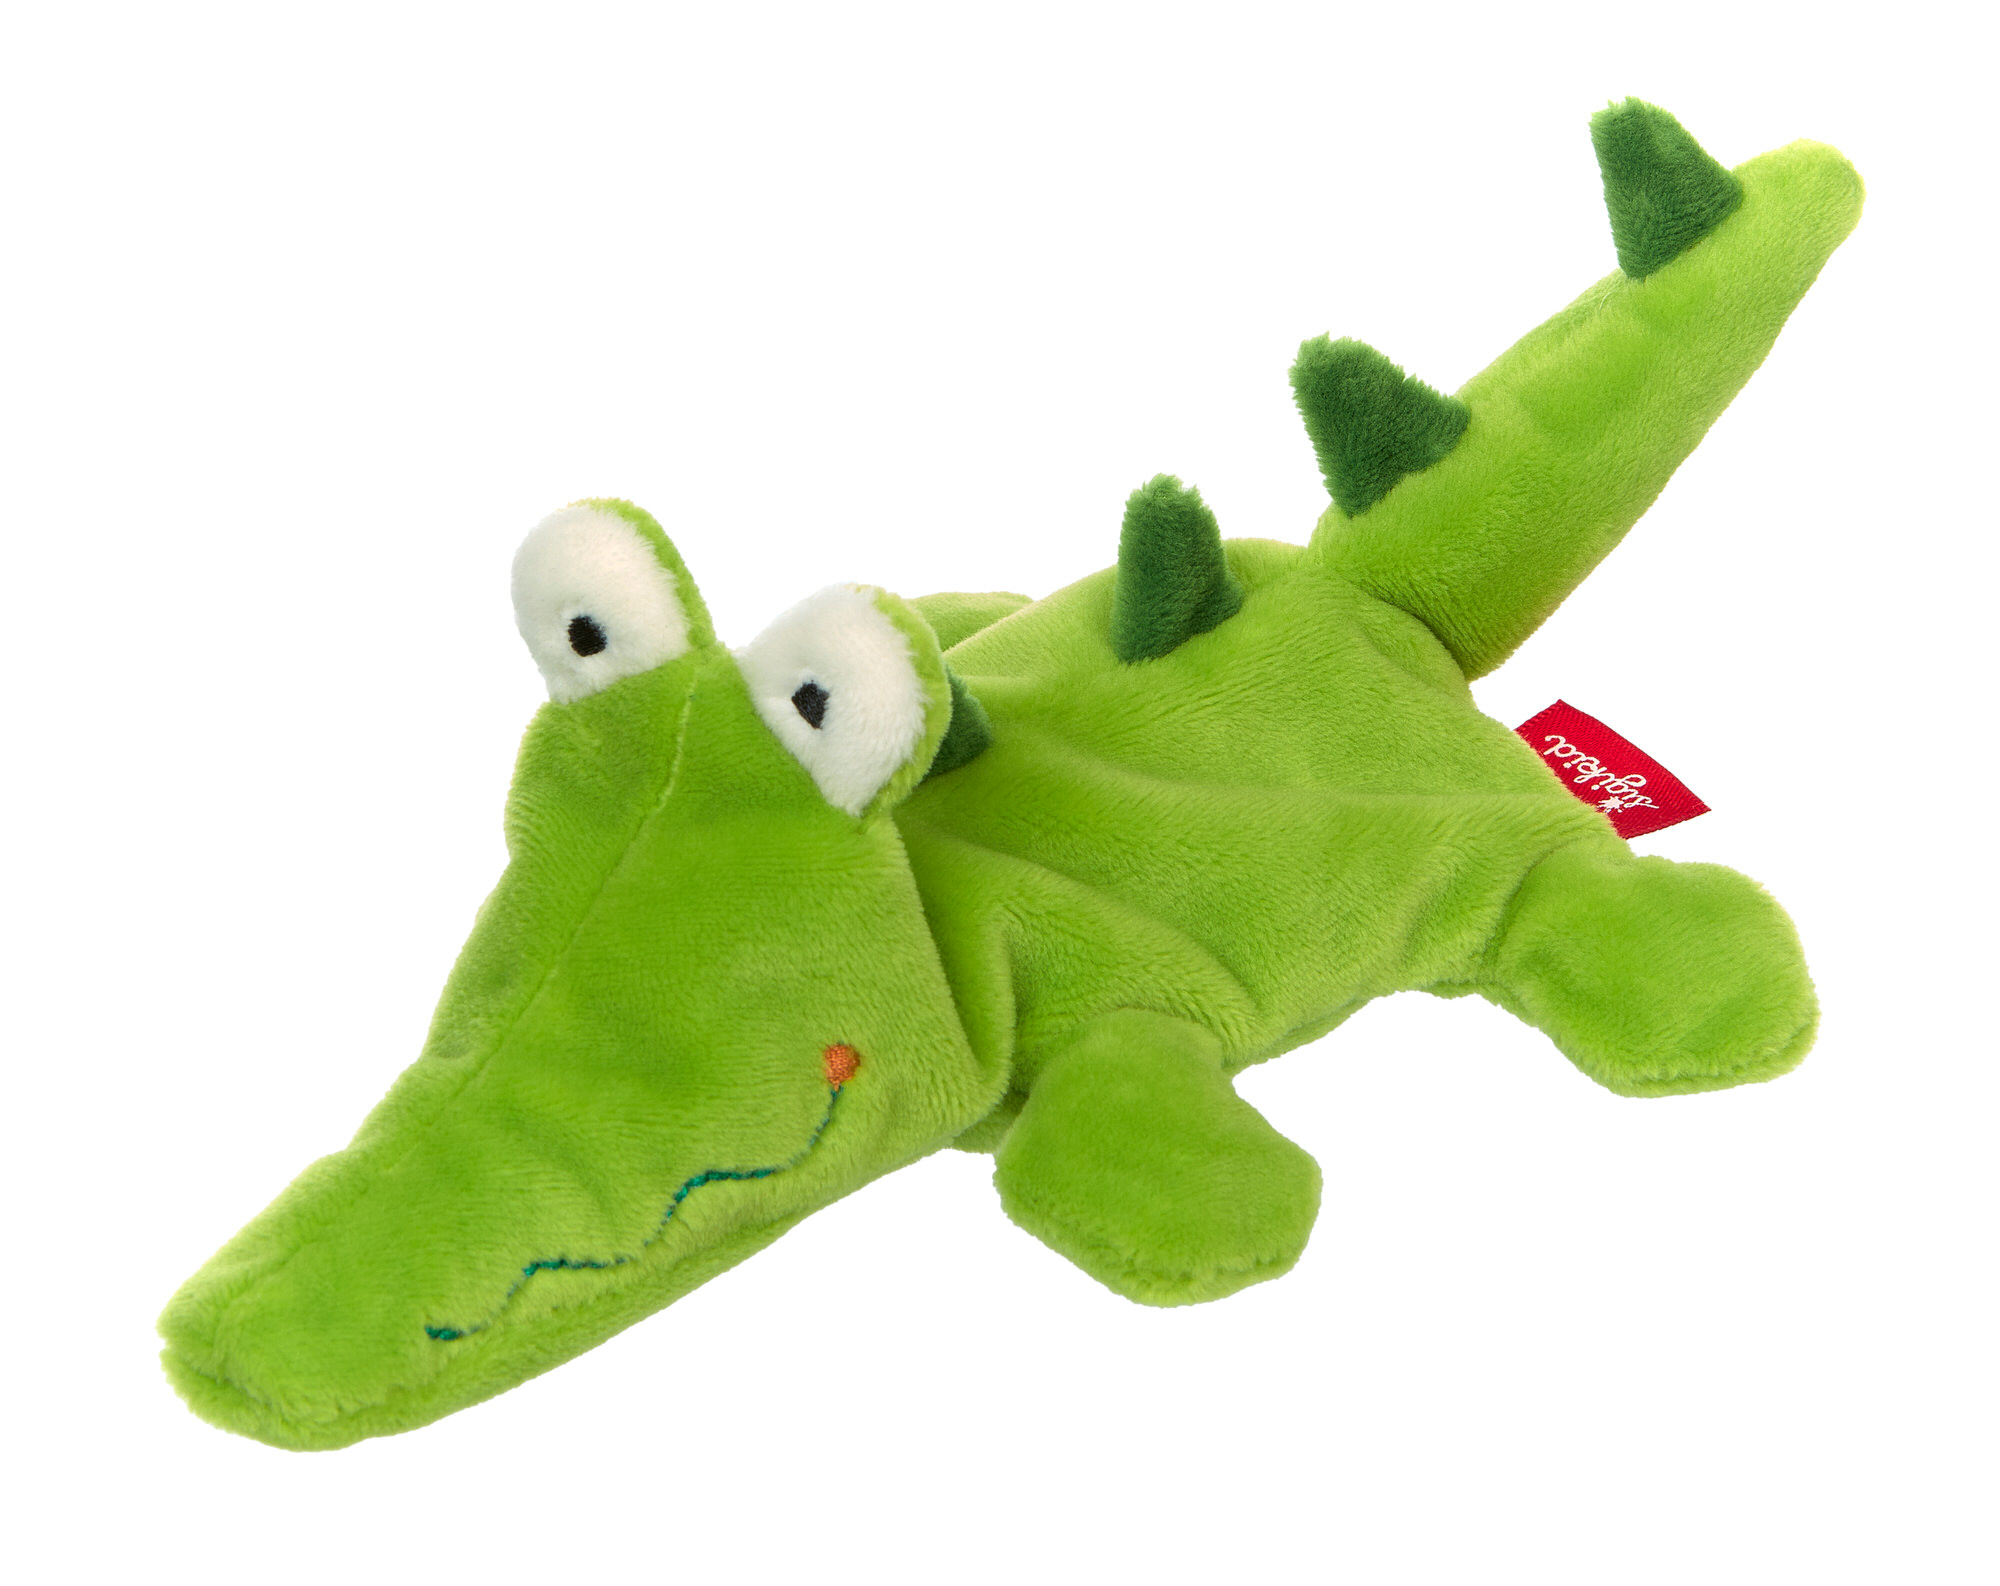 Mini plush crocodile, Sweety Cuddly Gadgets